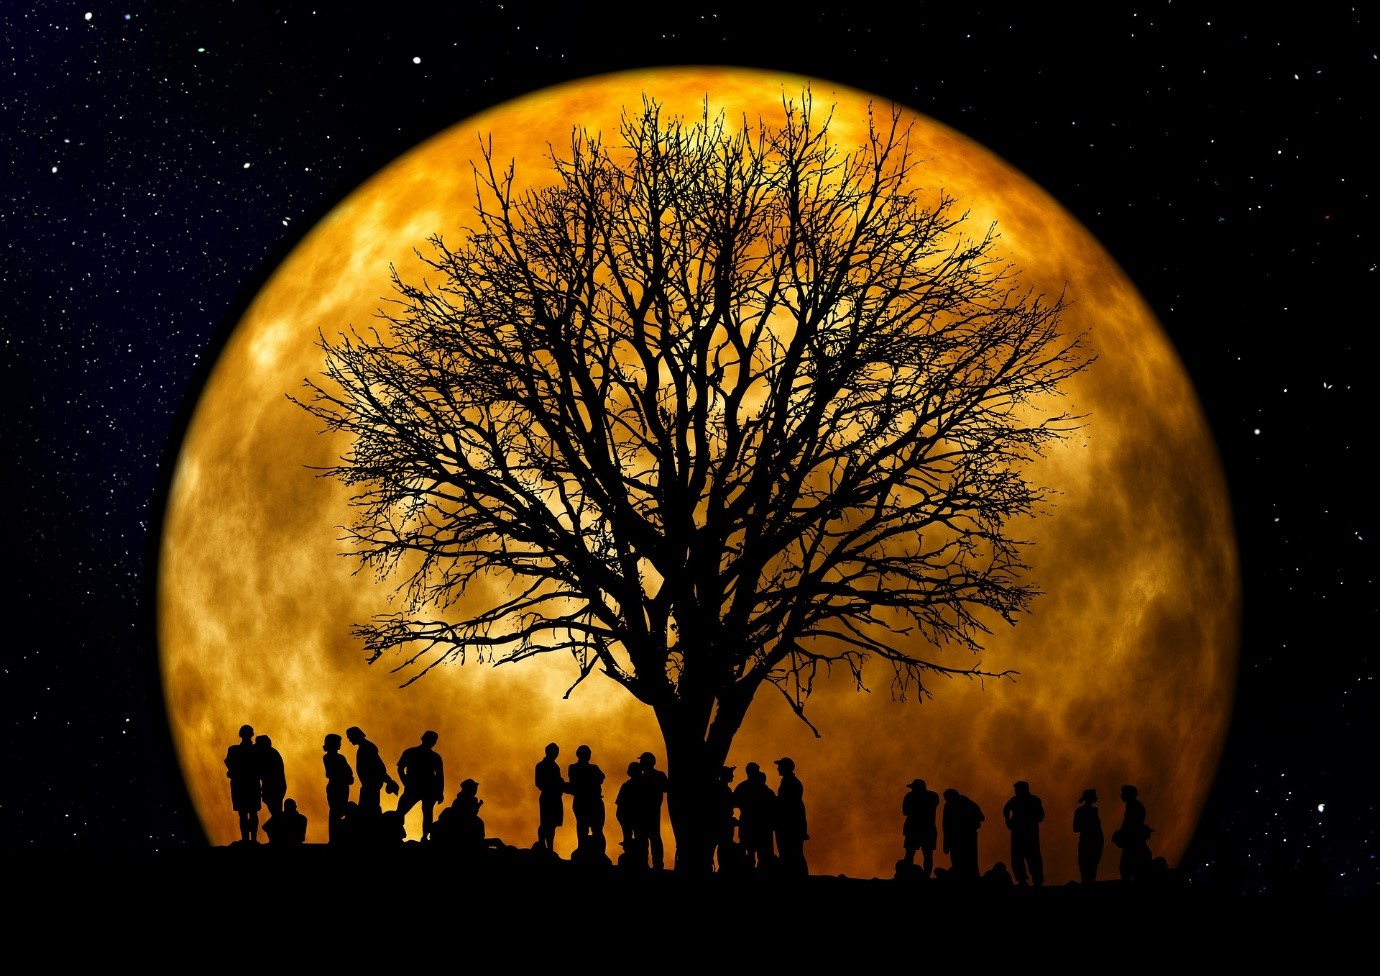 zdjęcie ludzie i drzewo w tle widać księżyc